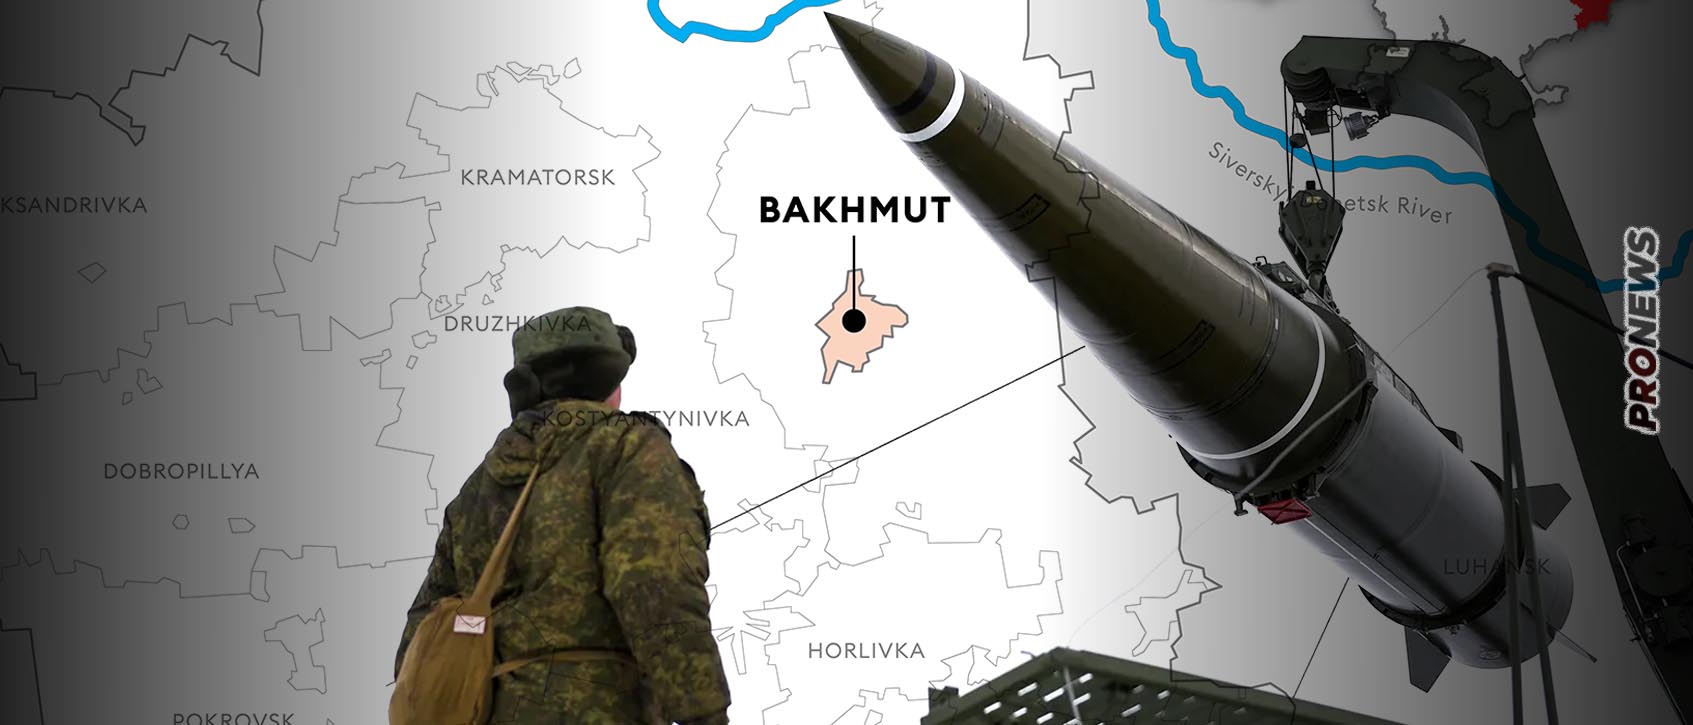 Ρωσικό χτύπημα «αποκεφάλισε» τους Ουκρανούς στο Μπακχμούτ: Χτυπήθηκε το στρατηγείο που ήταν υπεύθυνο για την άμυνα της περιοχής